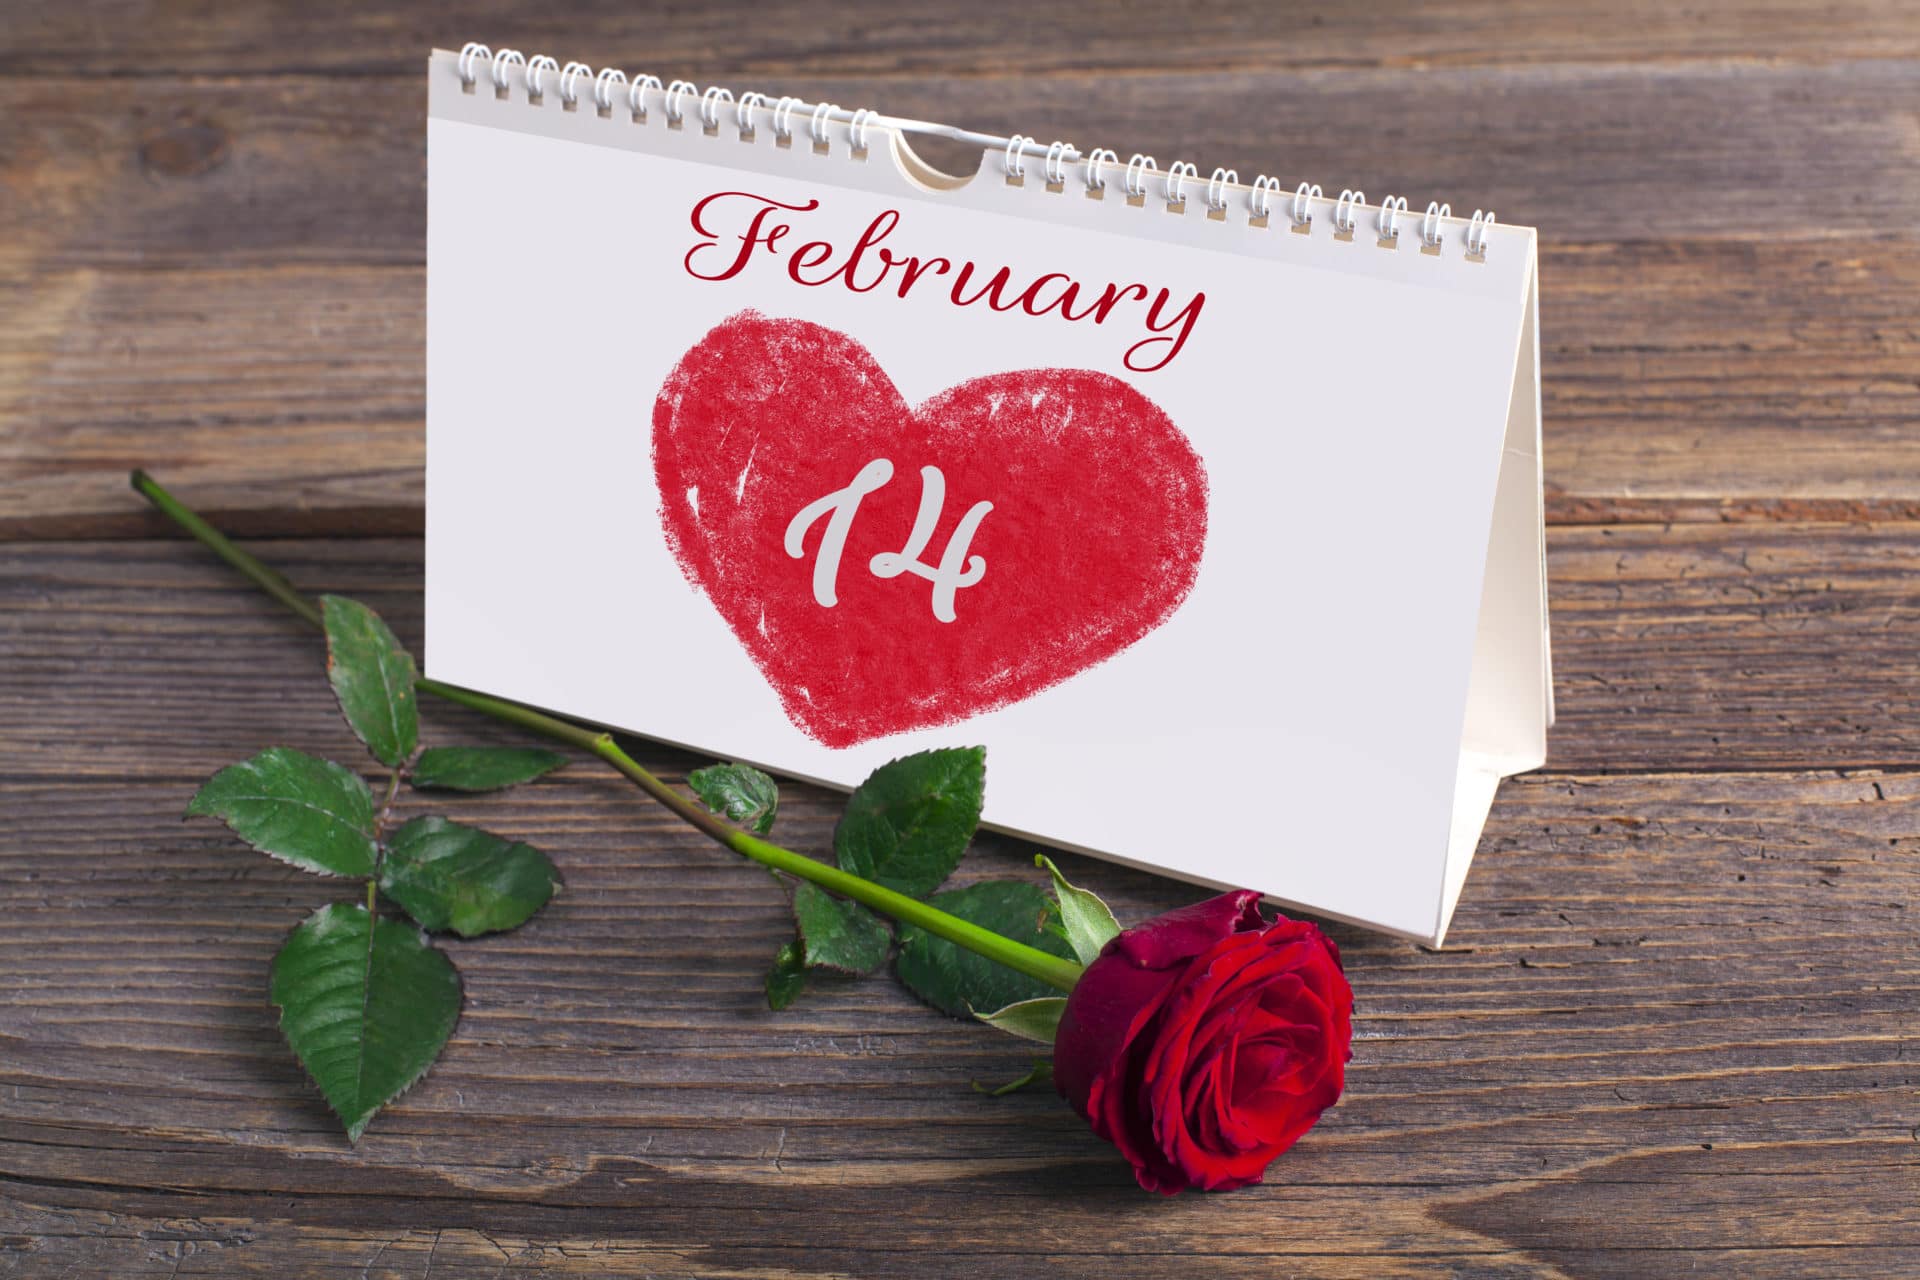 Por qué se celebra hoy el “Día de los enamorados”? - Data eNe